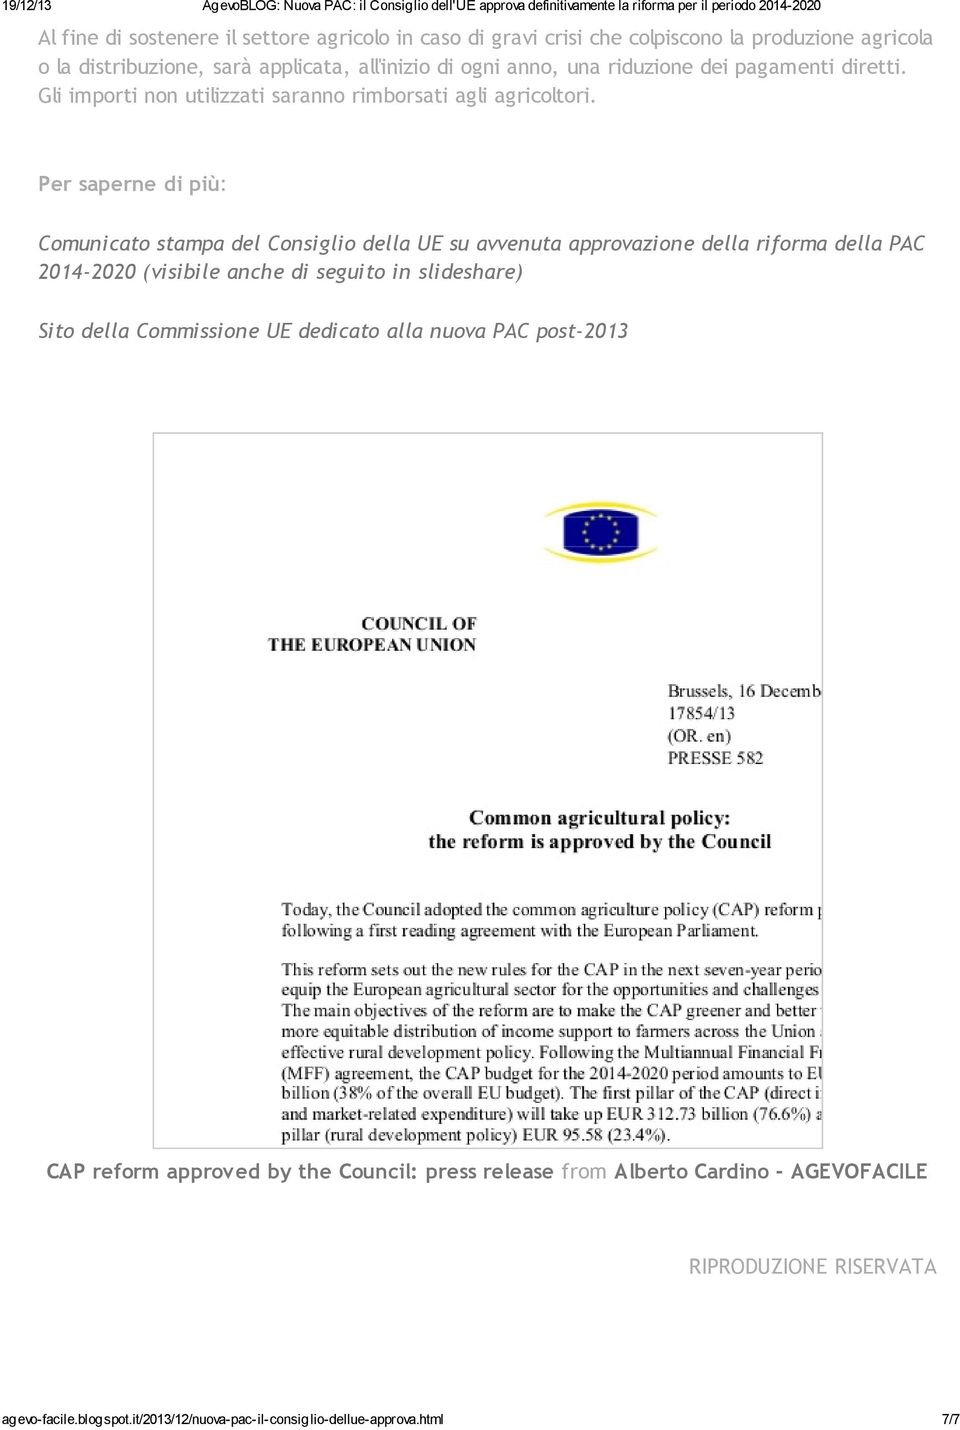 Per saperne di più: Comunicato stampa del Consiglio della UE su avvenuta approvazione della riforma della PAC 2014-2020 (visibile anche di seguito in slideshare) Sito